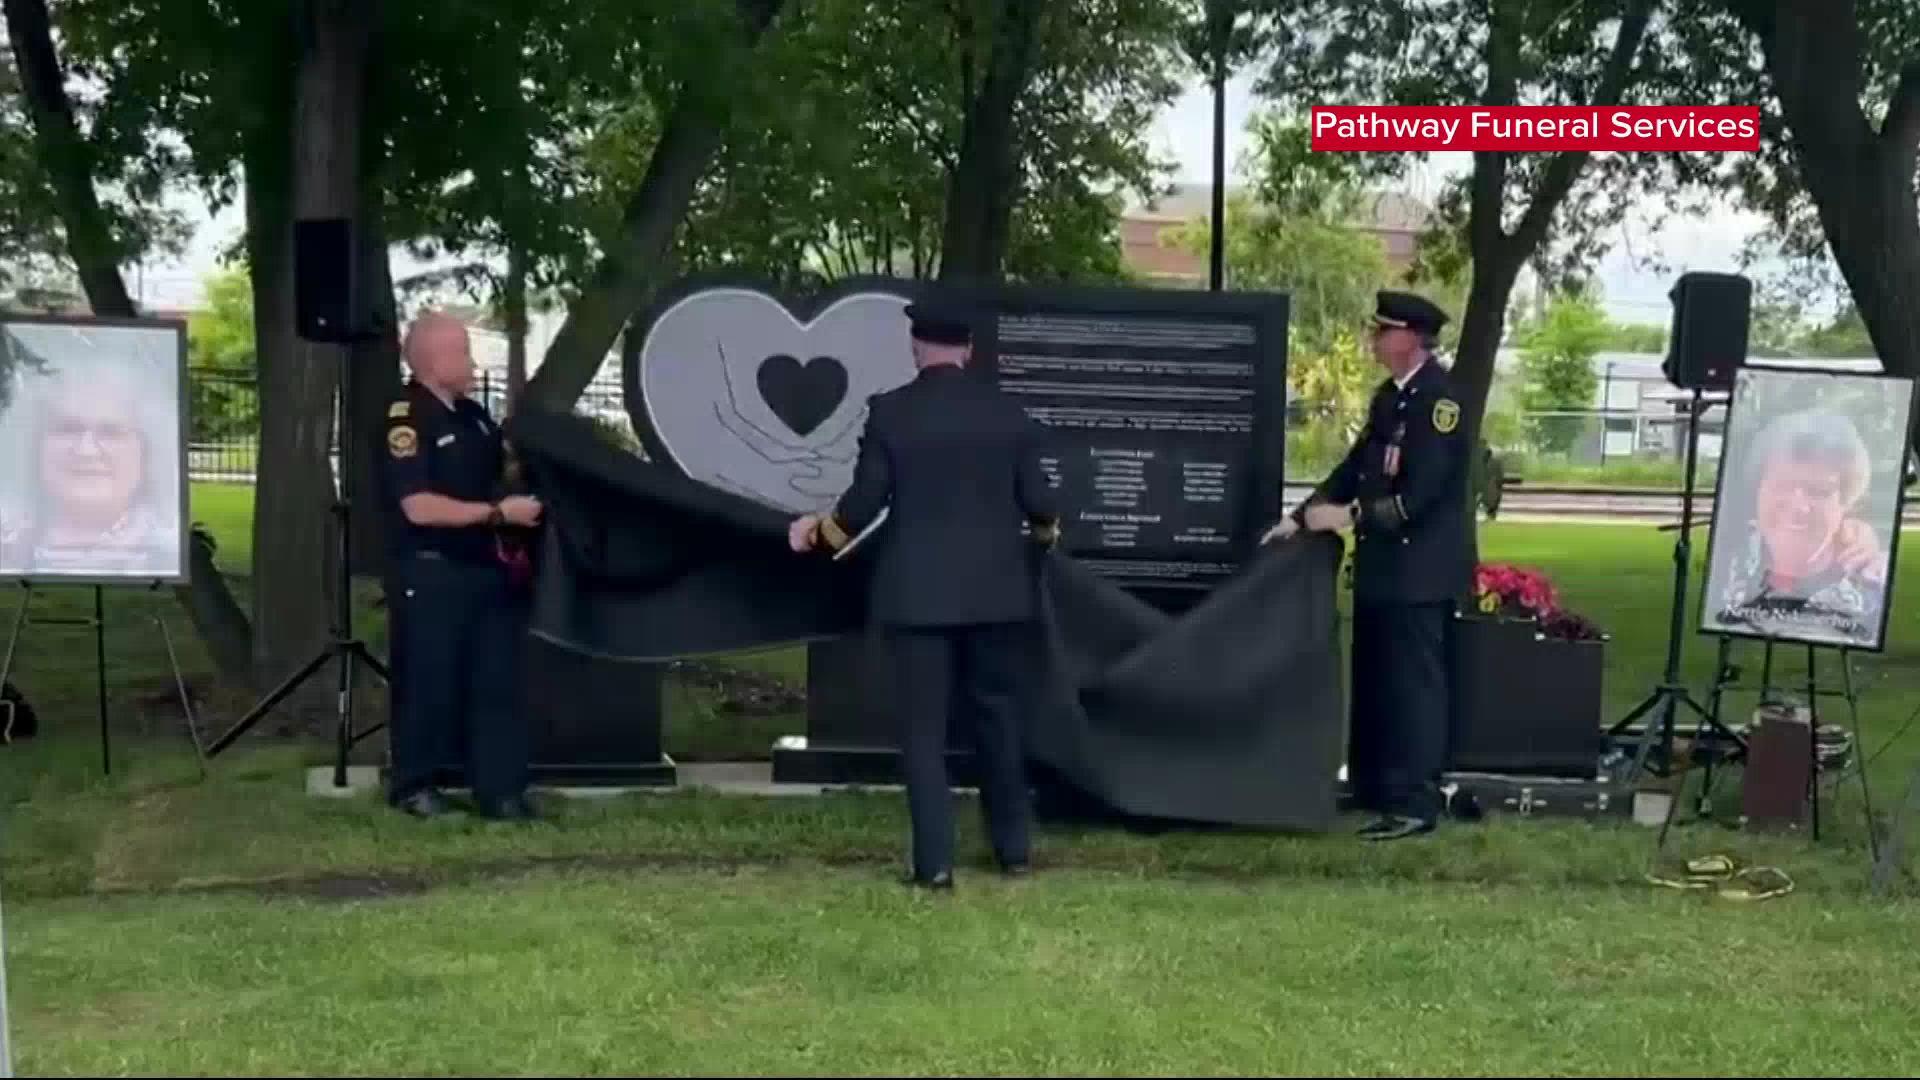 Memorial for bus crash victims unveiled Saturday